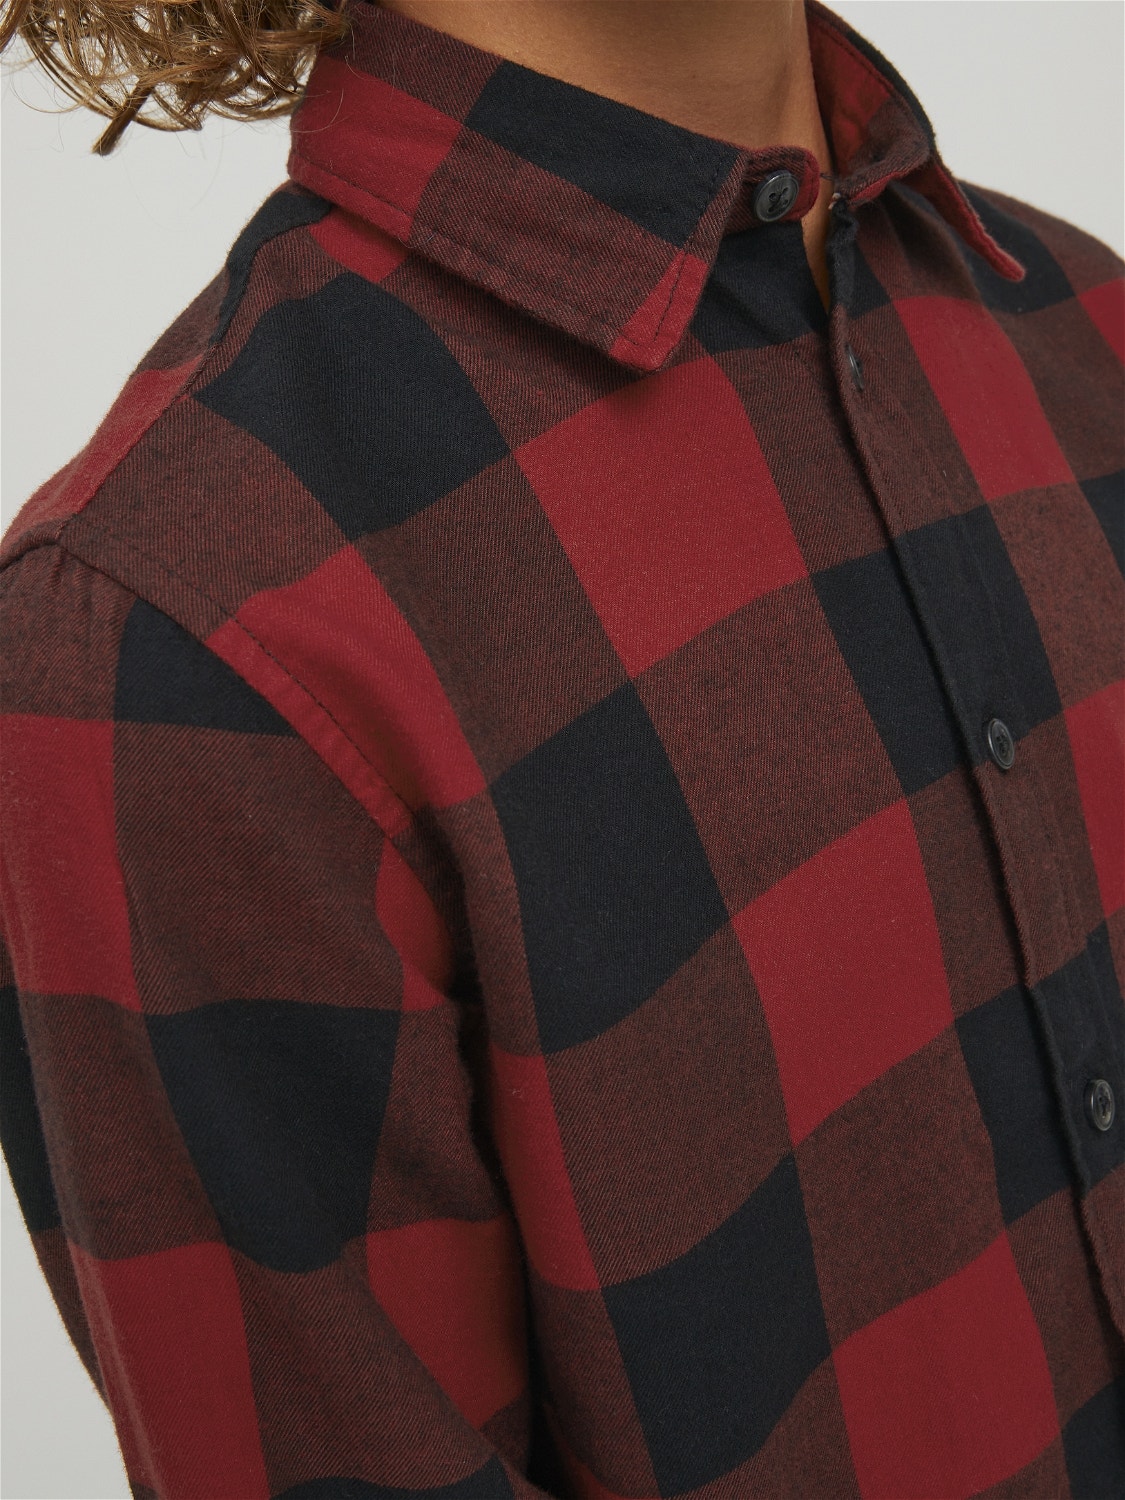 Jack & Jones Poikien Ruudullinen paita -Brick Red - 12183050